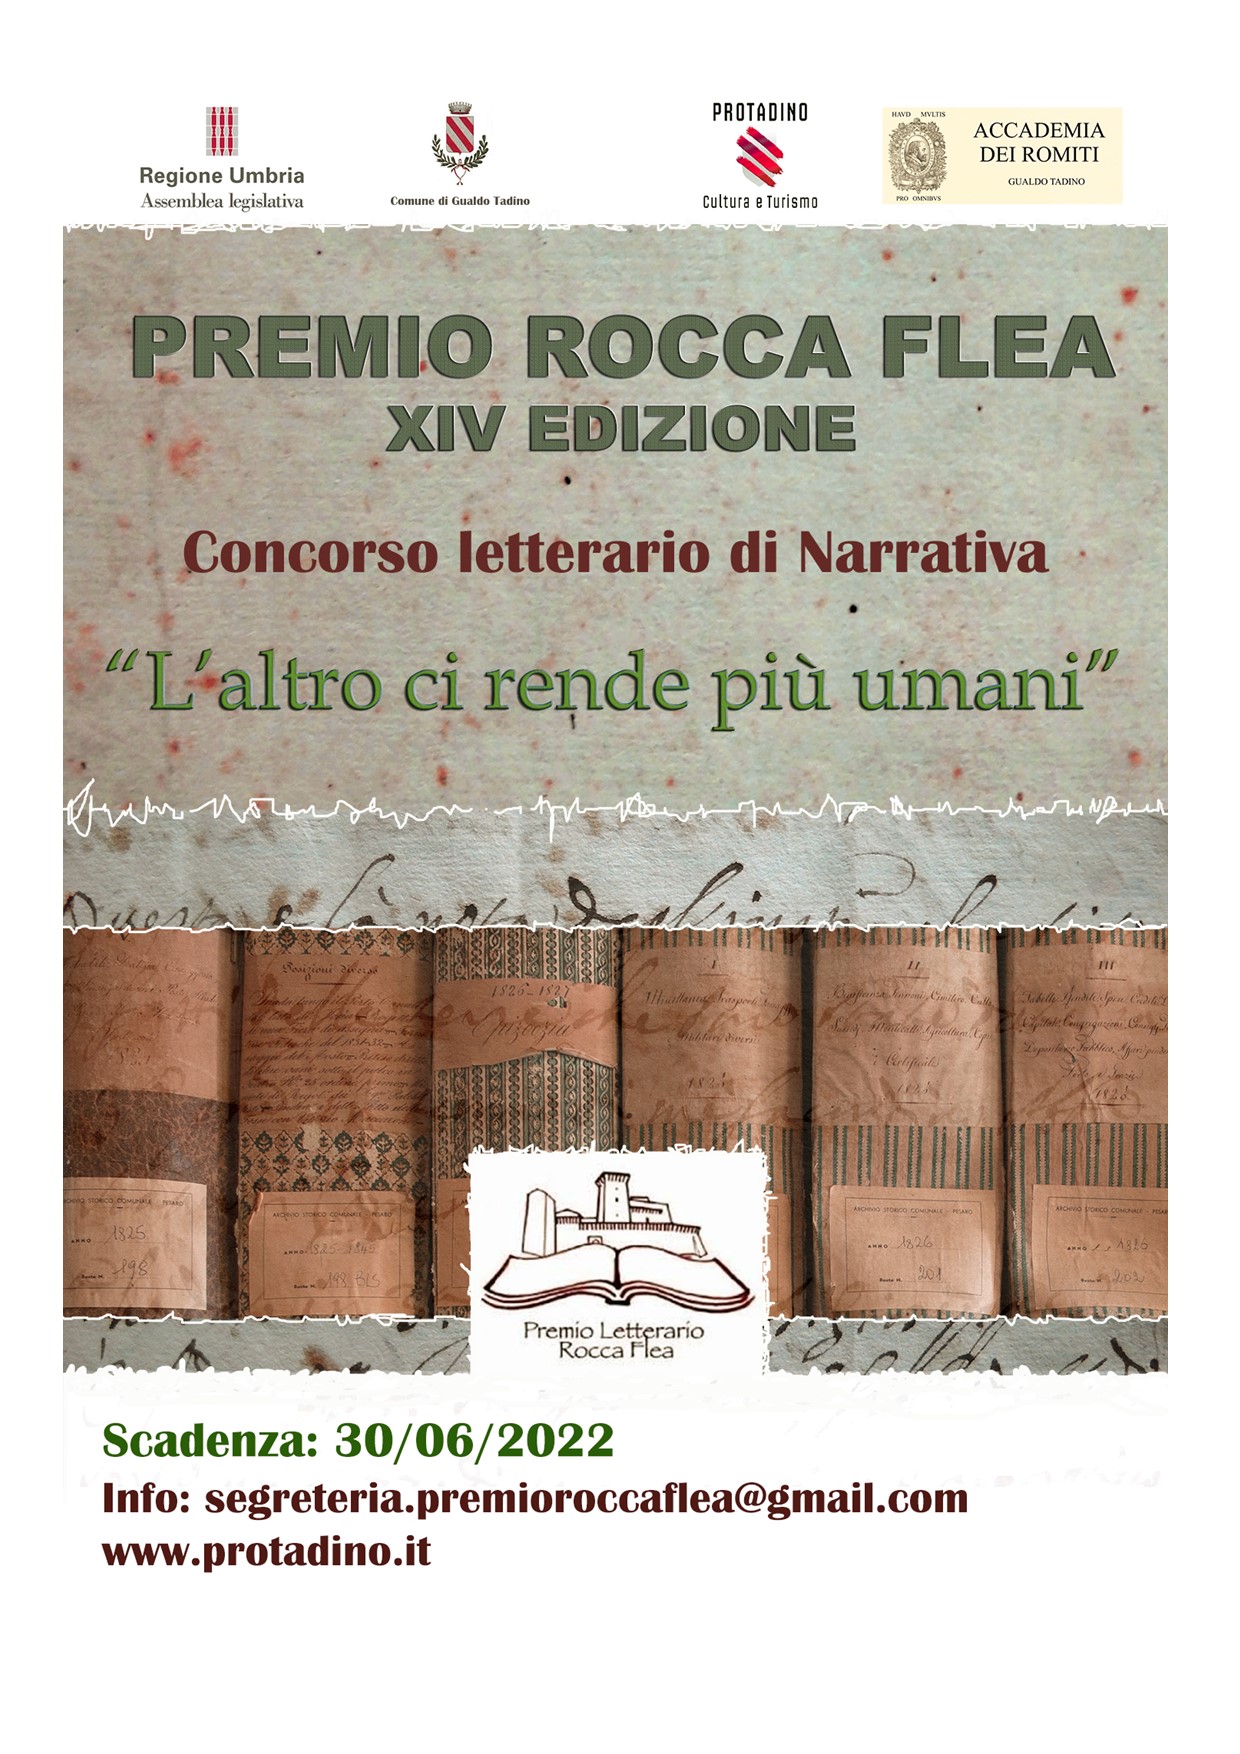 Premio Rocca Flea edizione XIV